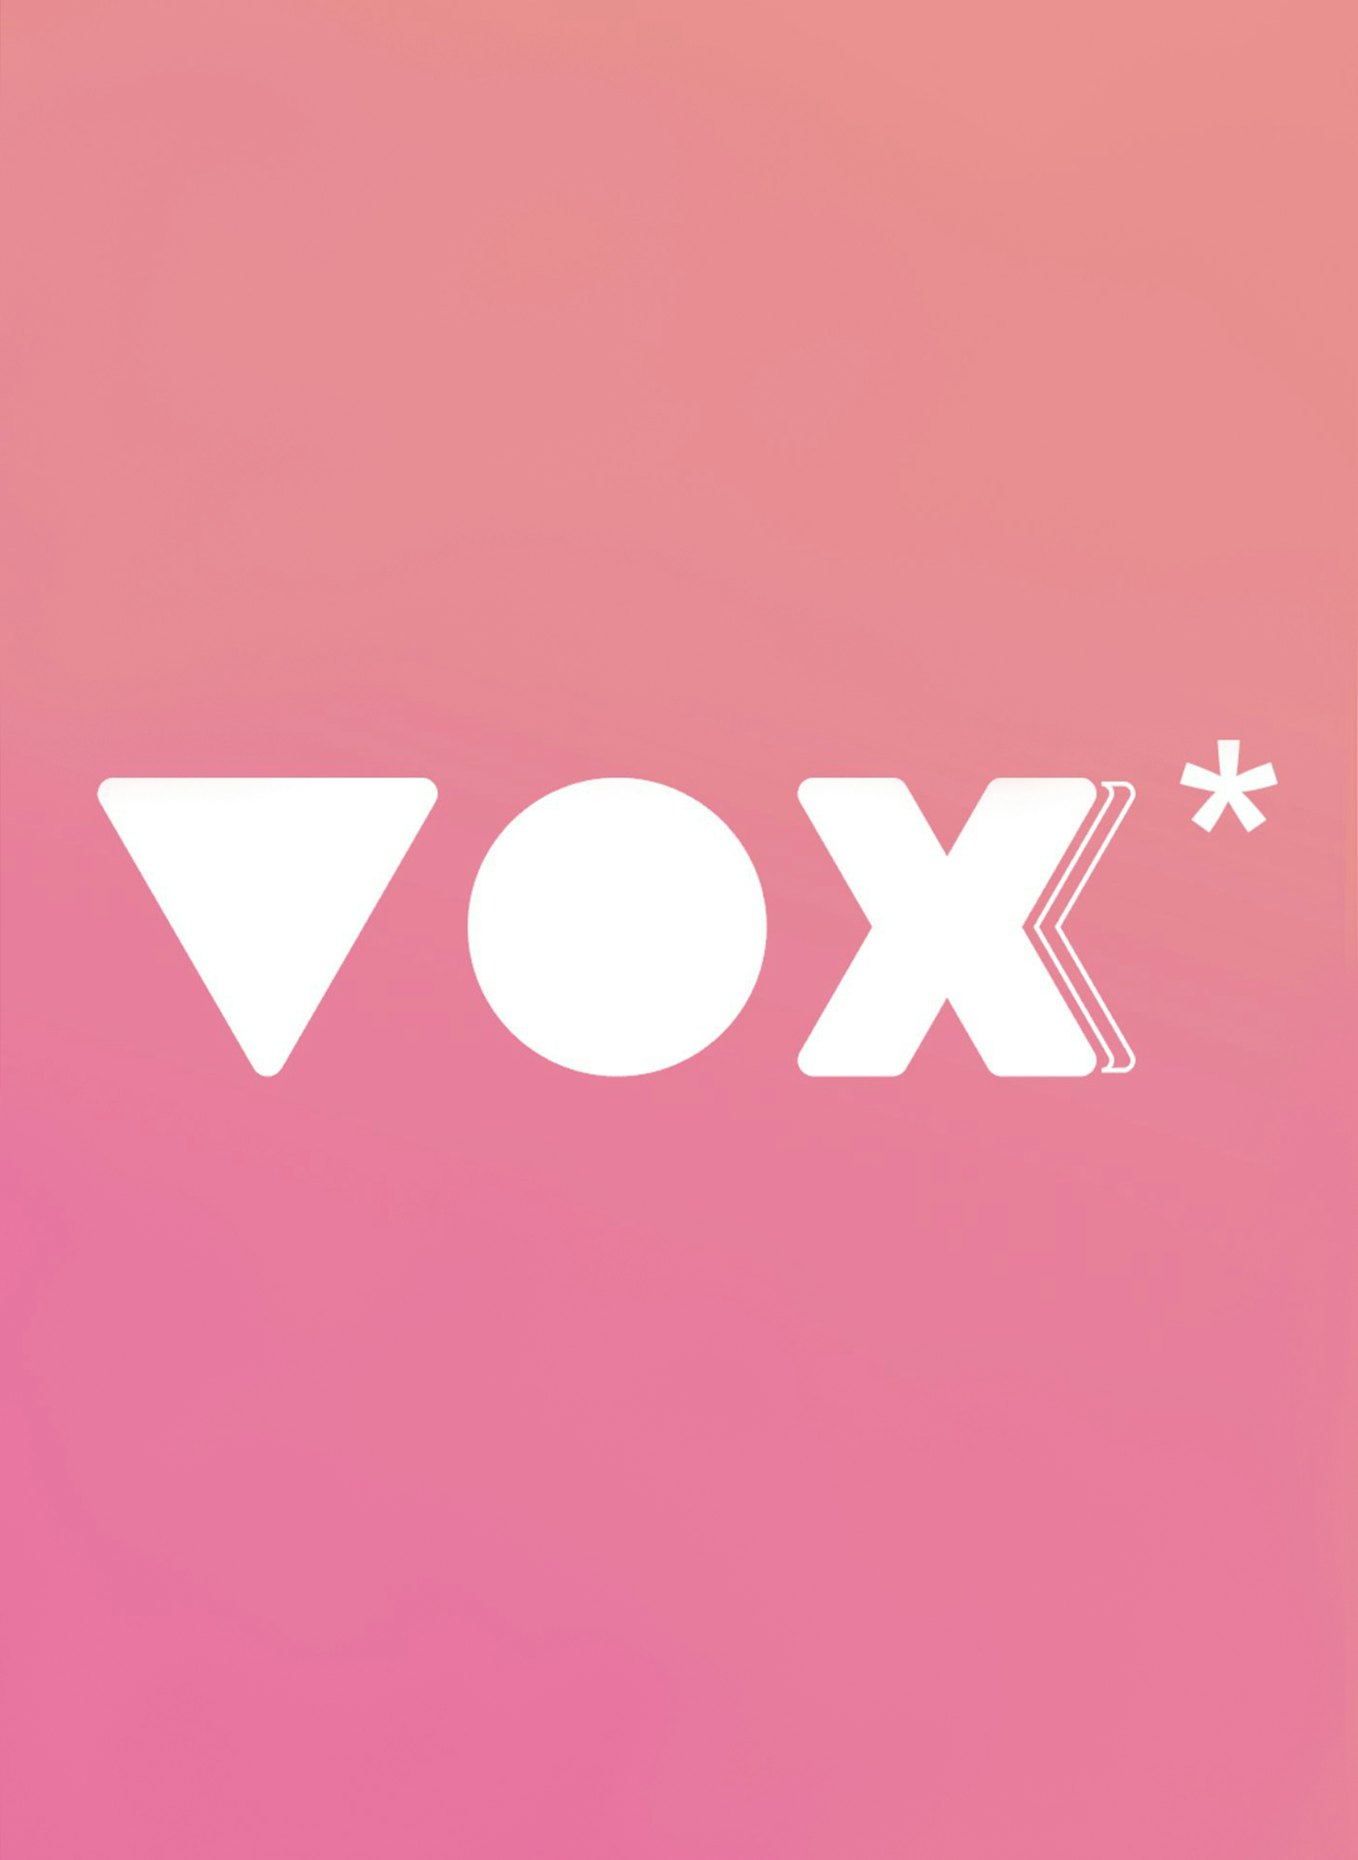 Voxxx